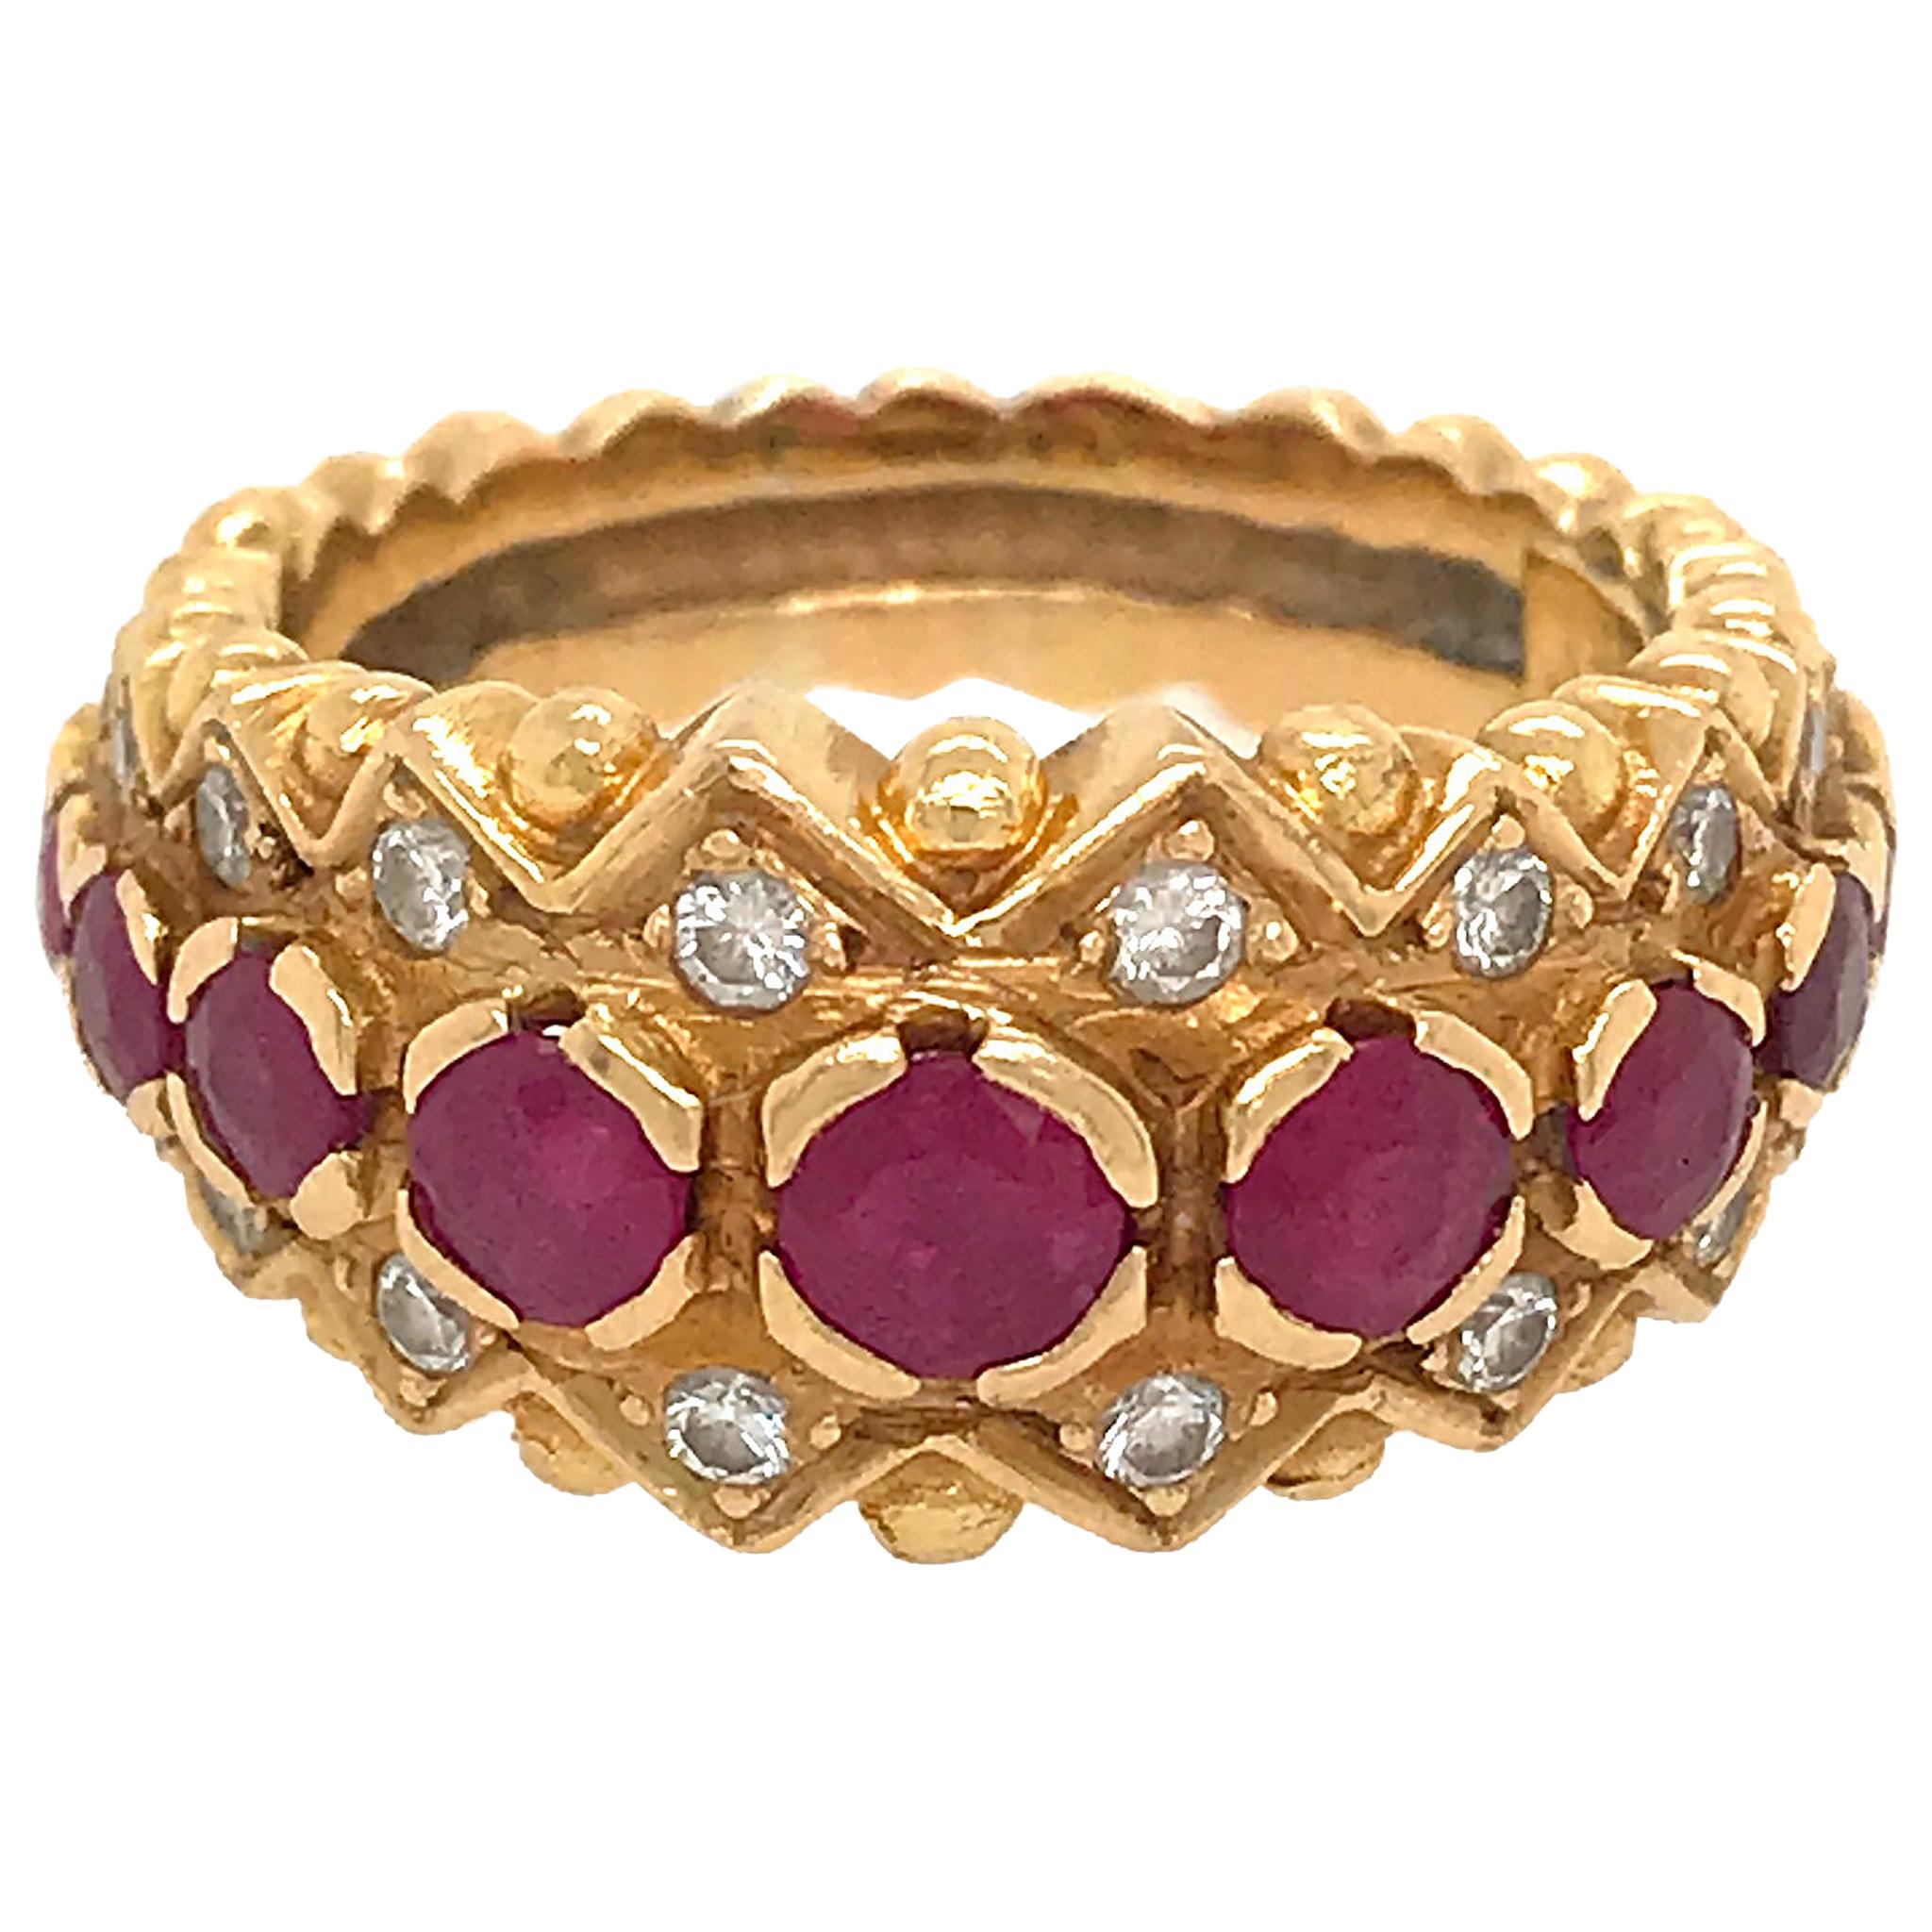 Zolotas Ring aus 18 Karat Gelbgold mit Rubin und Diamant